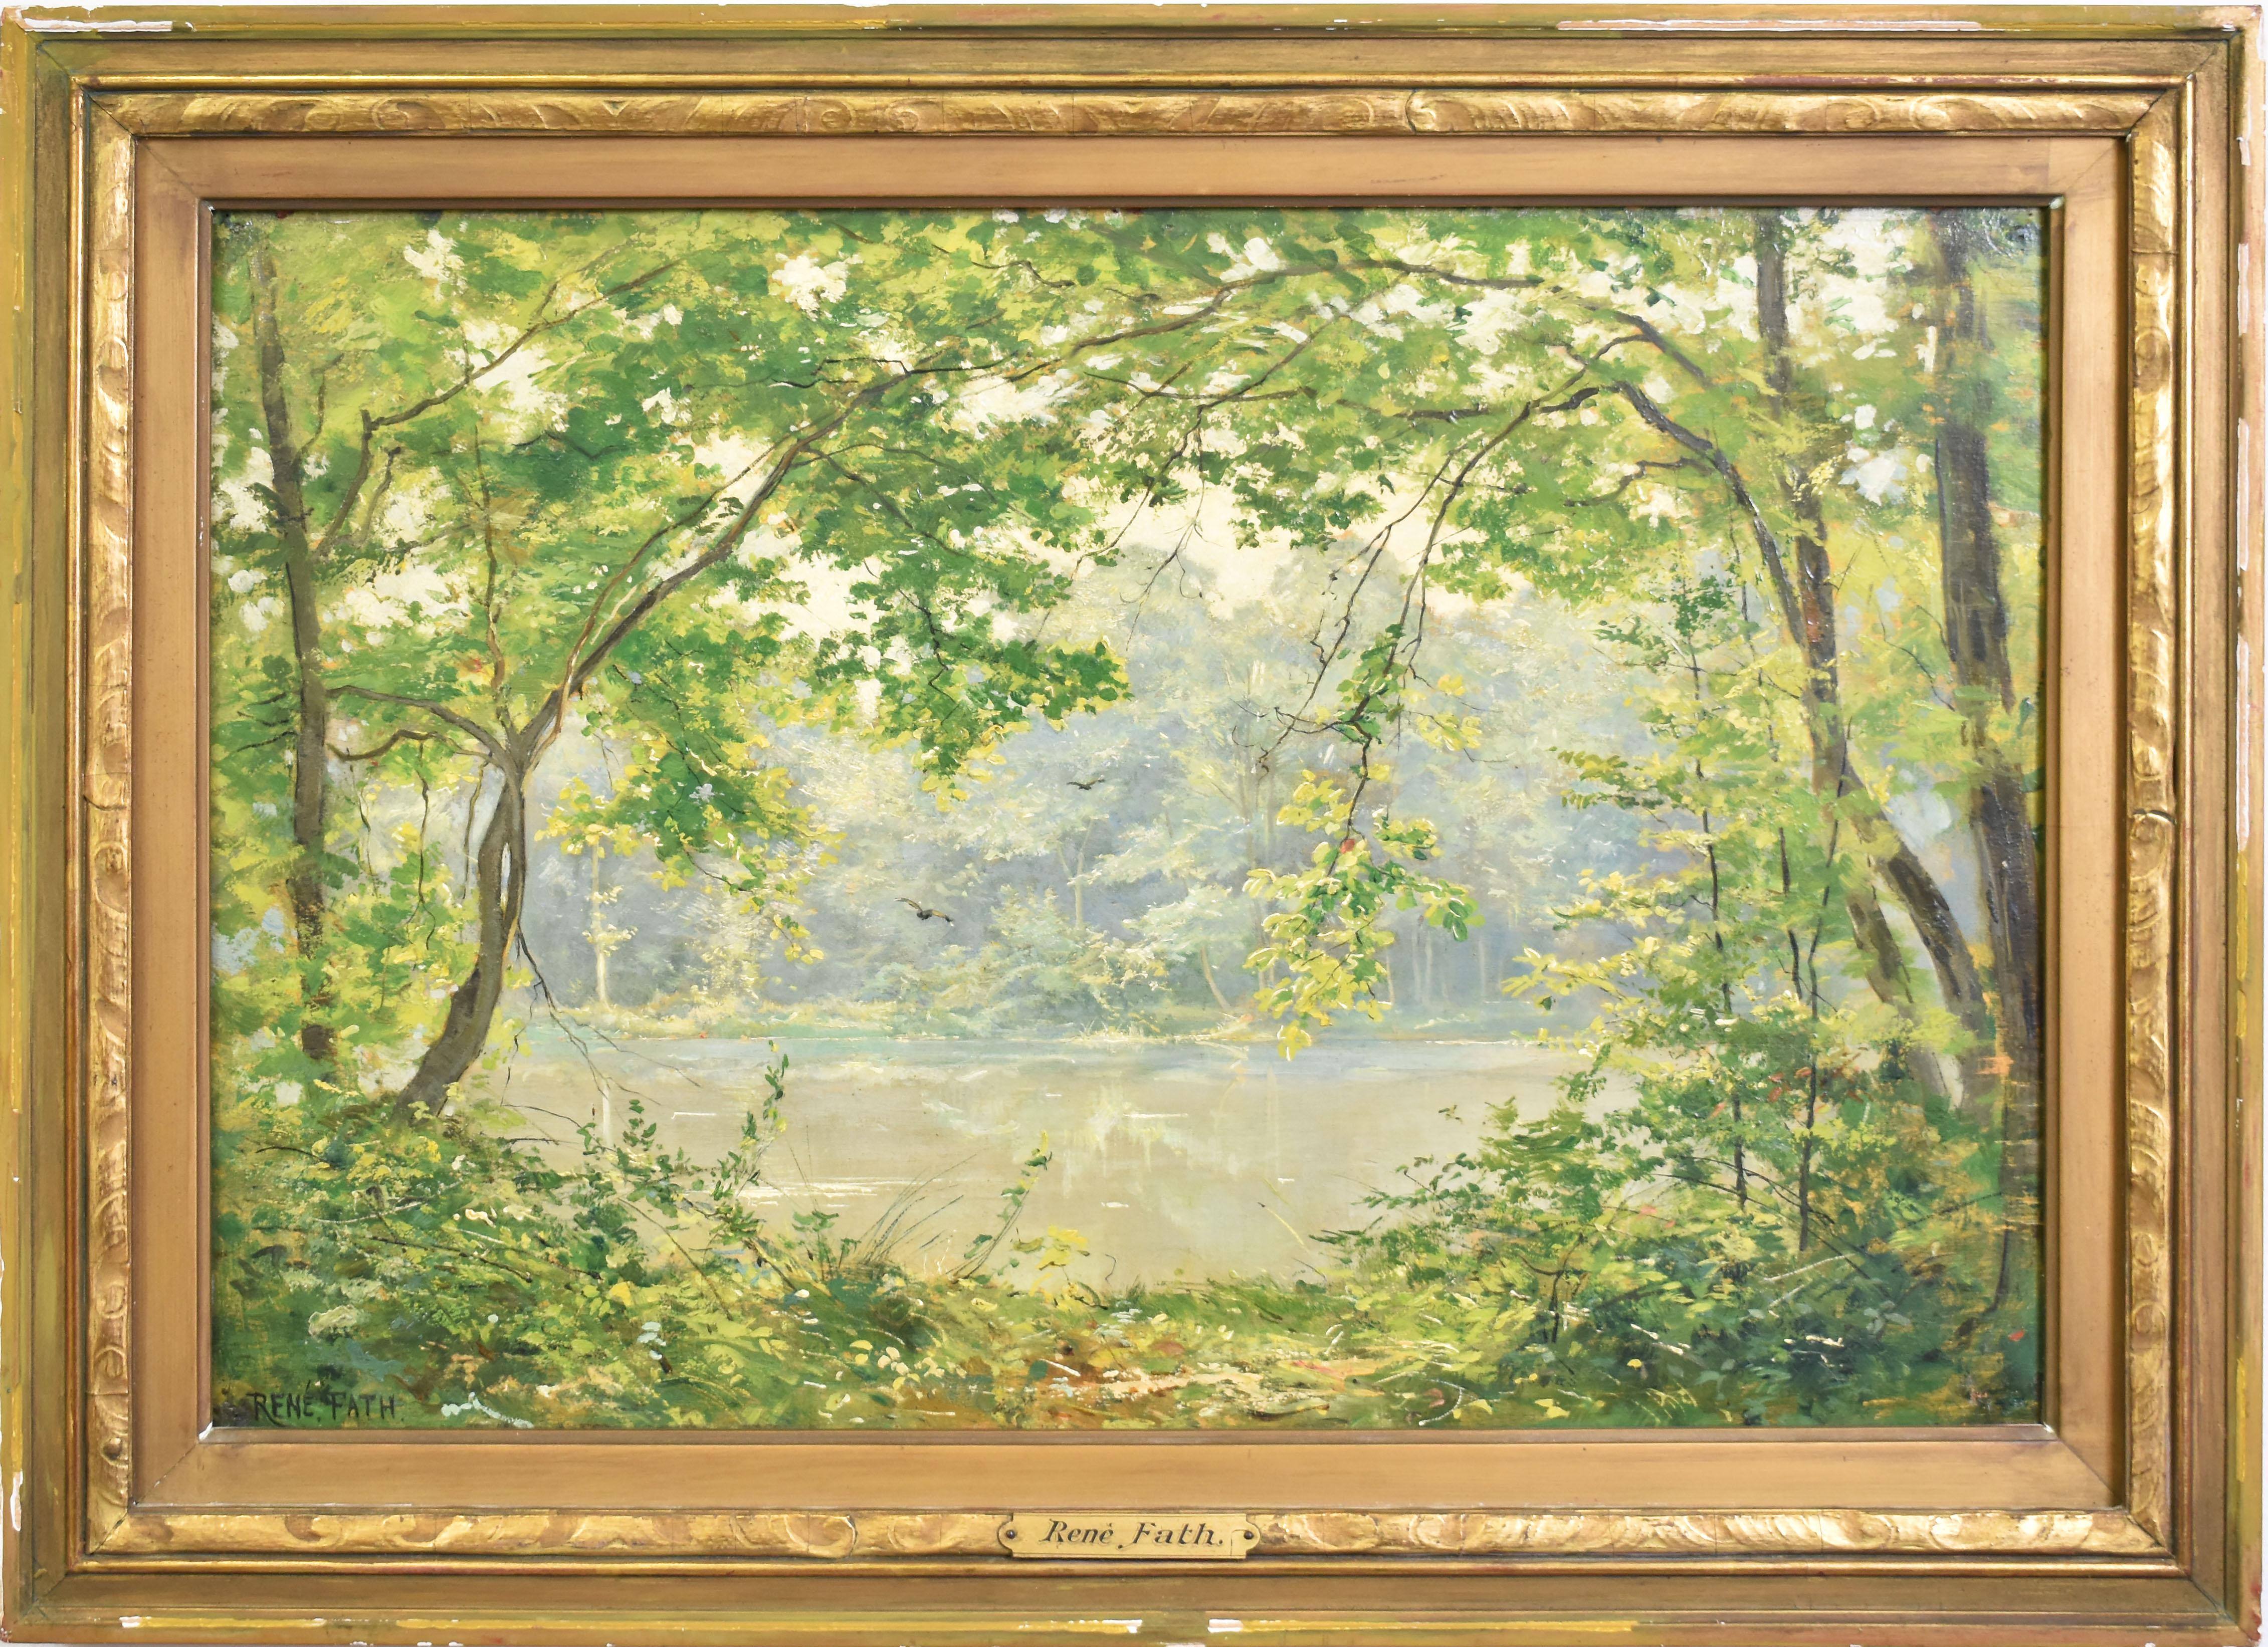 René Maurice Fath Landscape Painting - Antique Barbizon School Impressionist River Landscape Oil Painting by Rene Fath